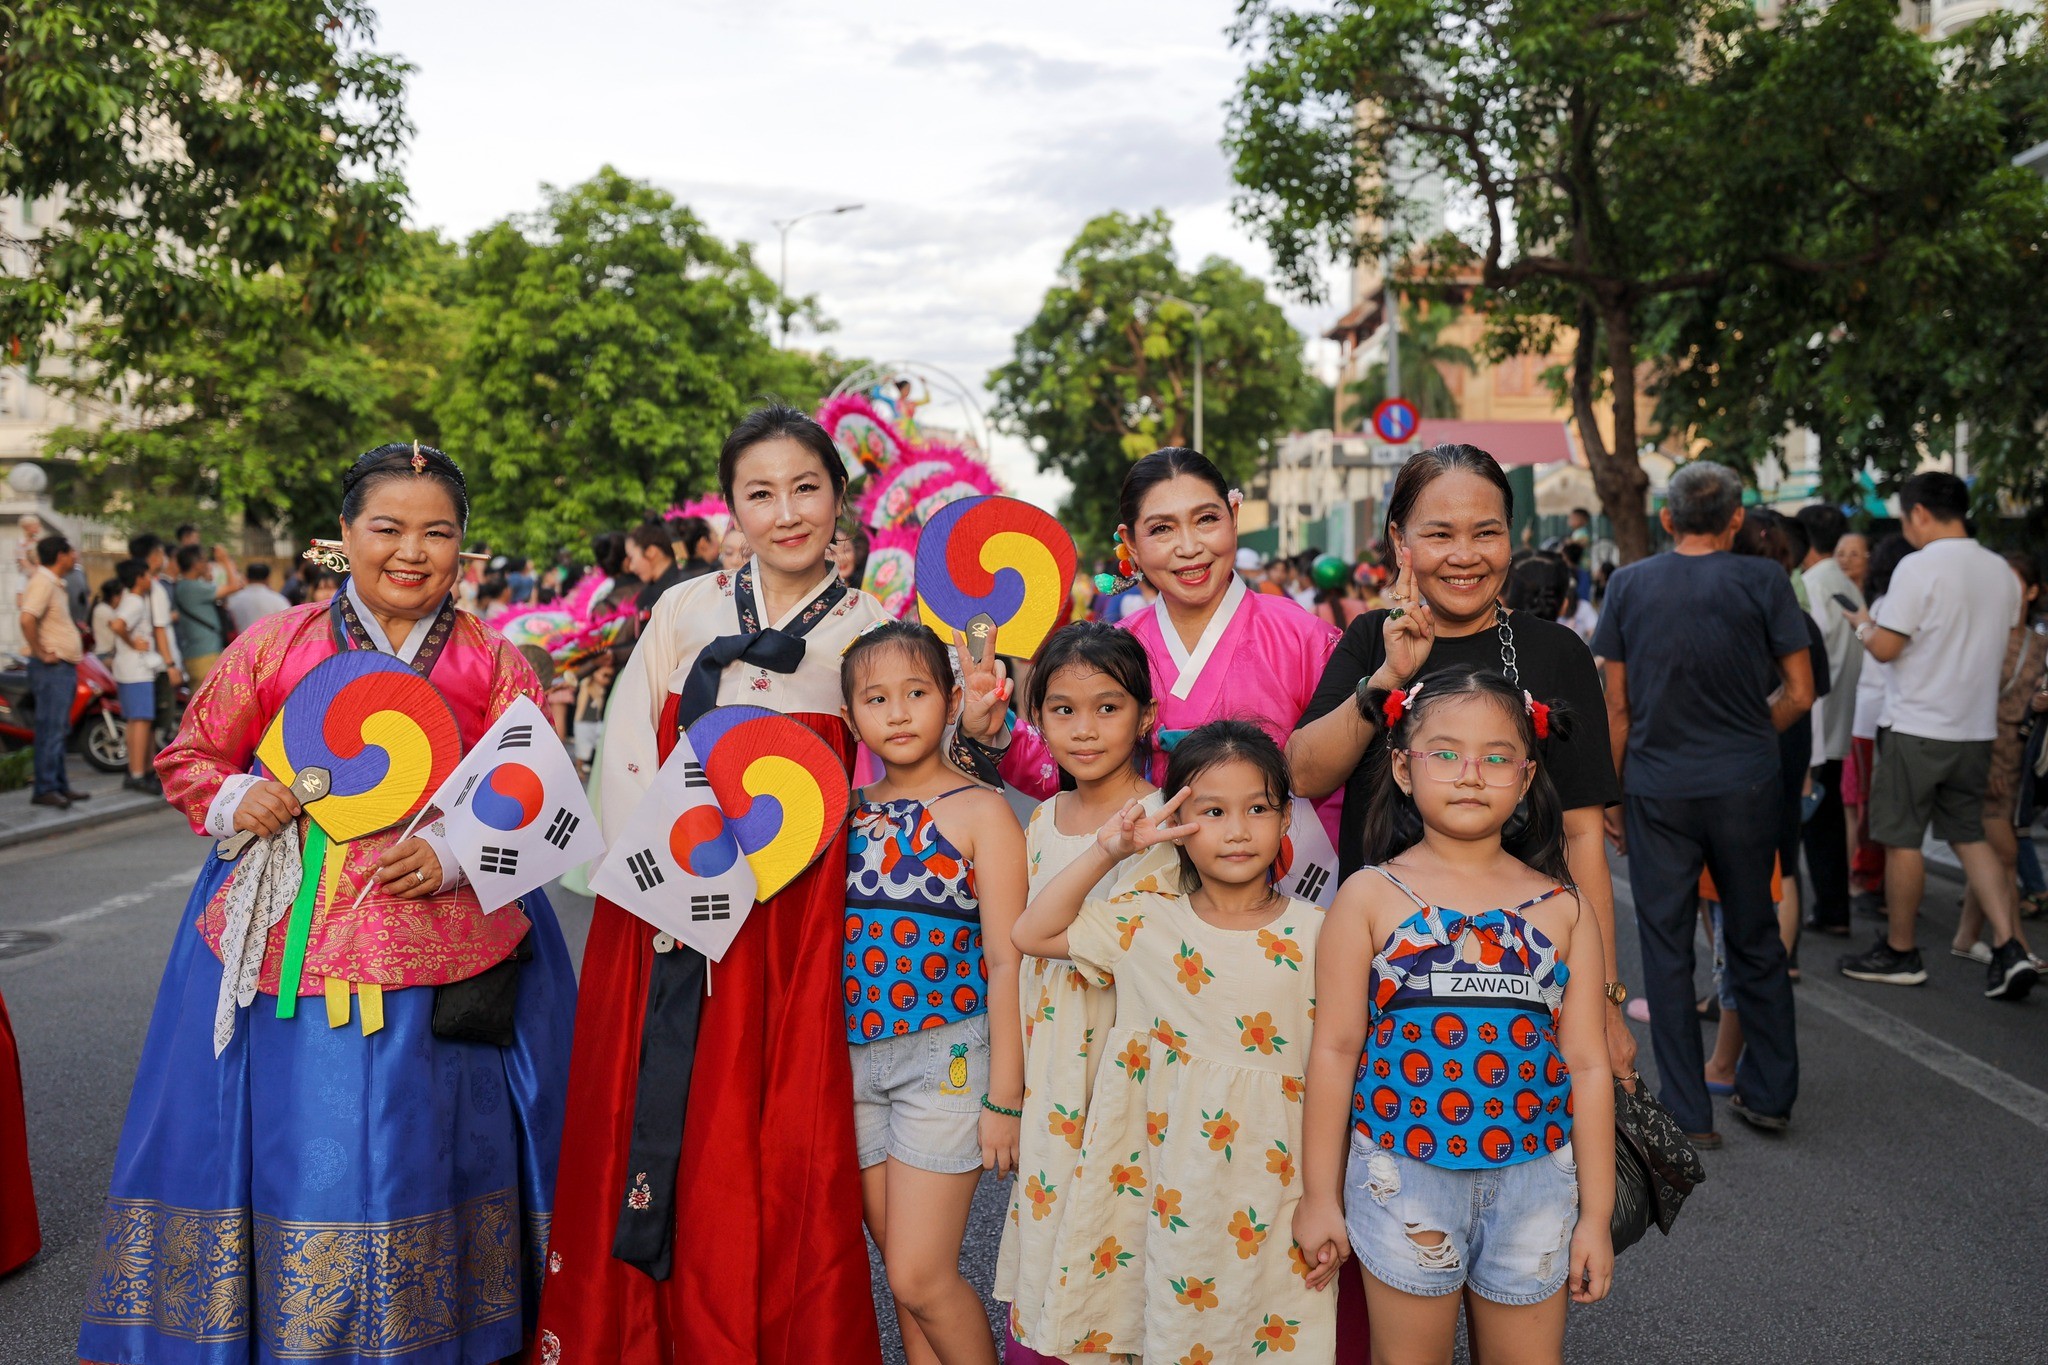 Các hoạt động trình diễn trên đường phố đa dạng sắc màu văn hóa, cộng hưởng giữa sự trình diễn của các nghệ sĩ cùng với sự cổ vũ đầy hào hứng, nhiệt tình của người dân và du khách đã tạo nên không khí sôi động trên đường phố Huế trong những ngày diễn ra Festival.